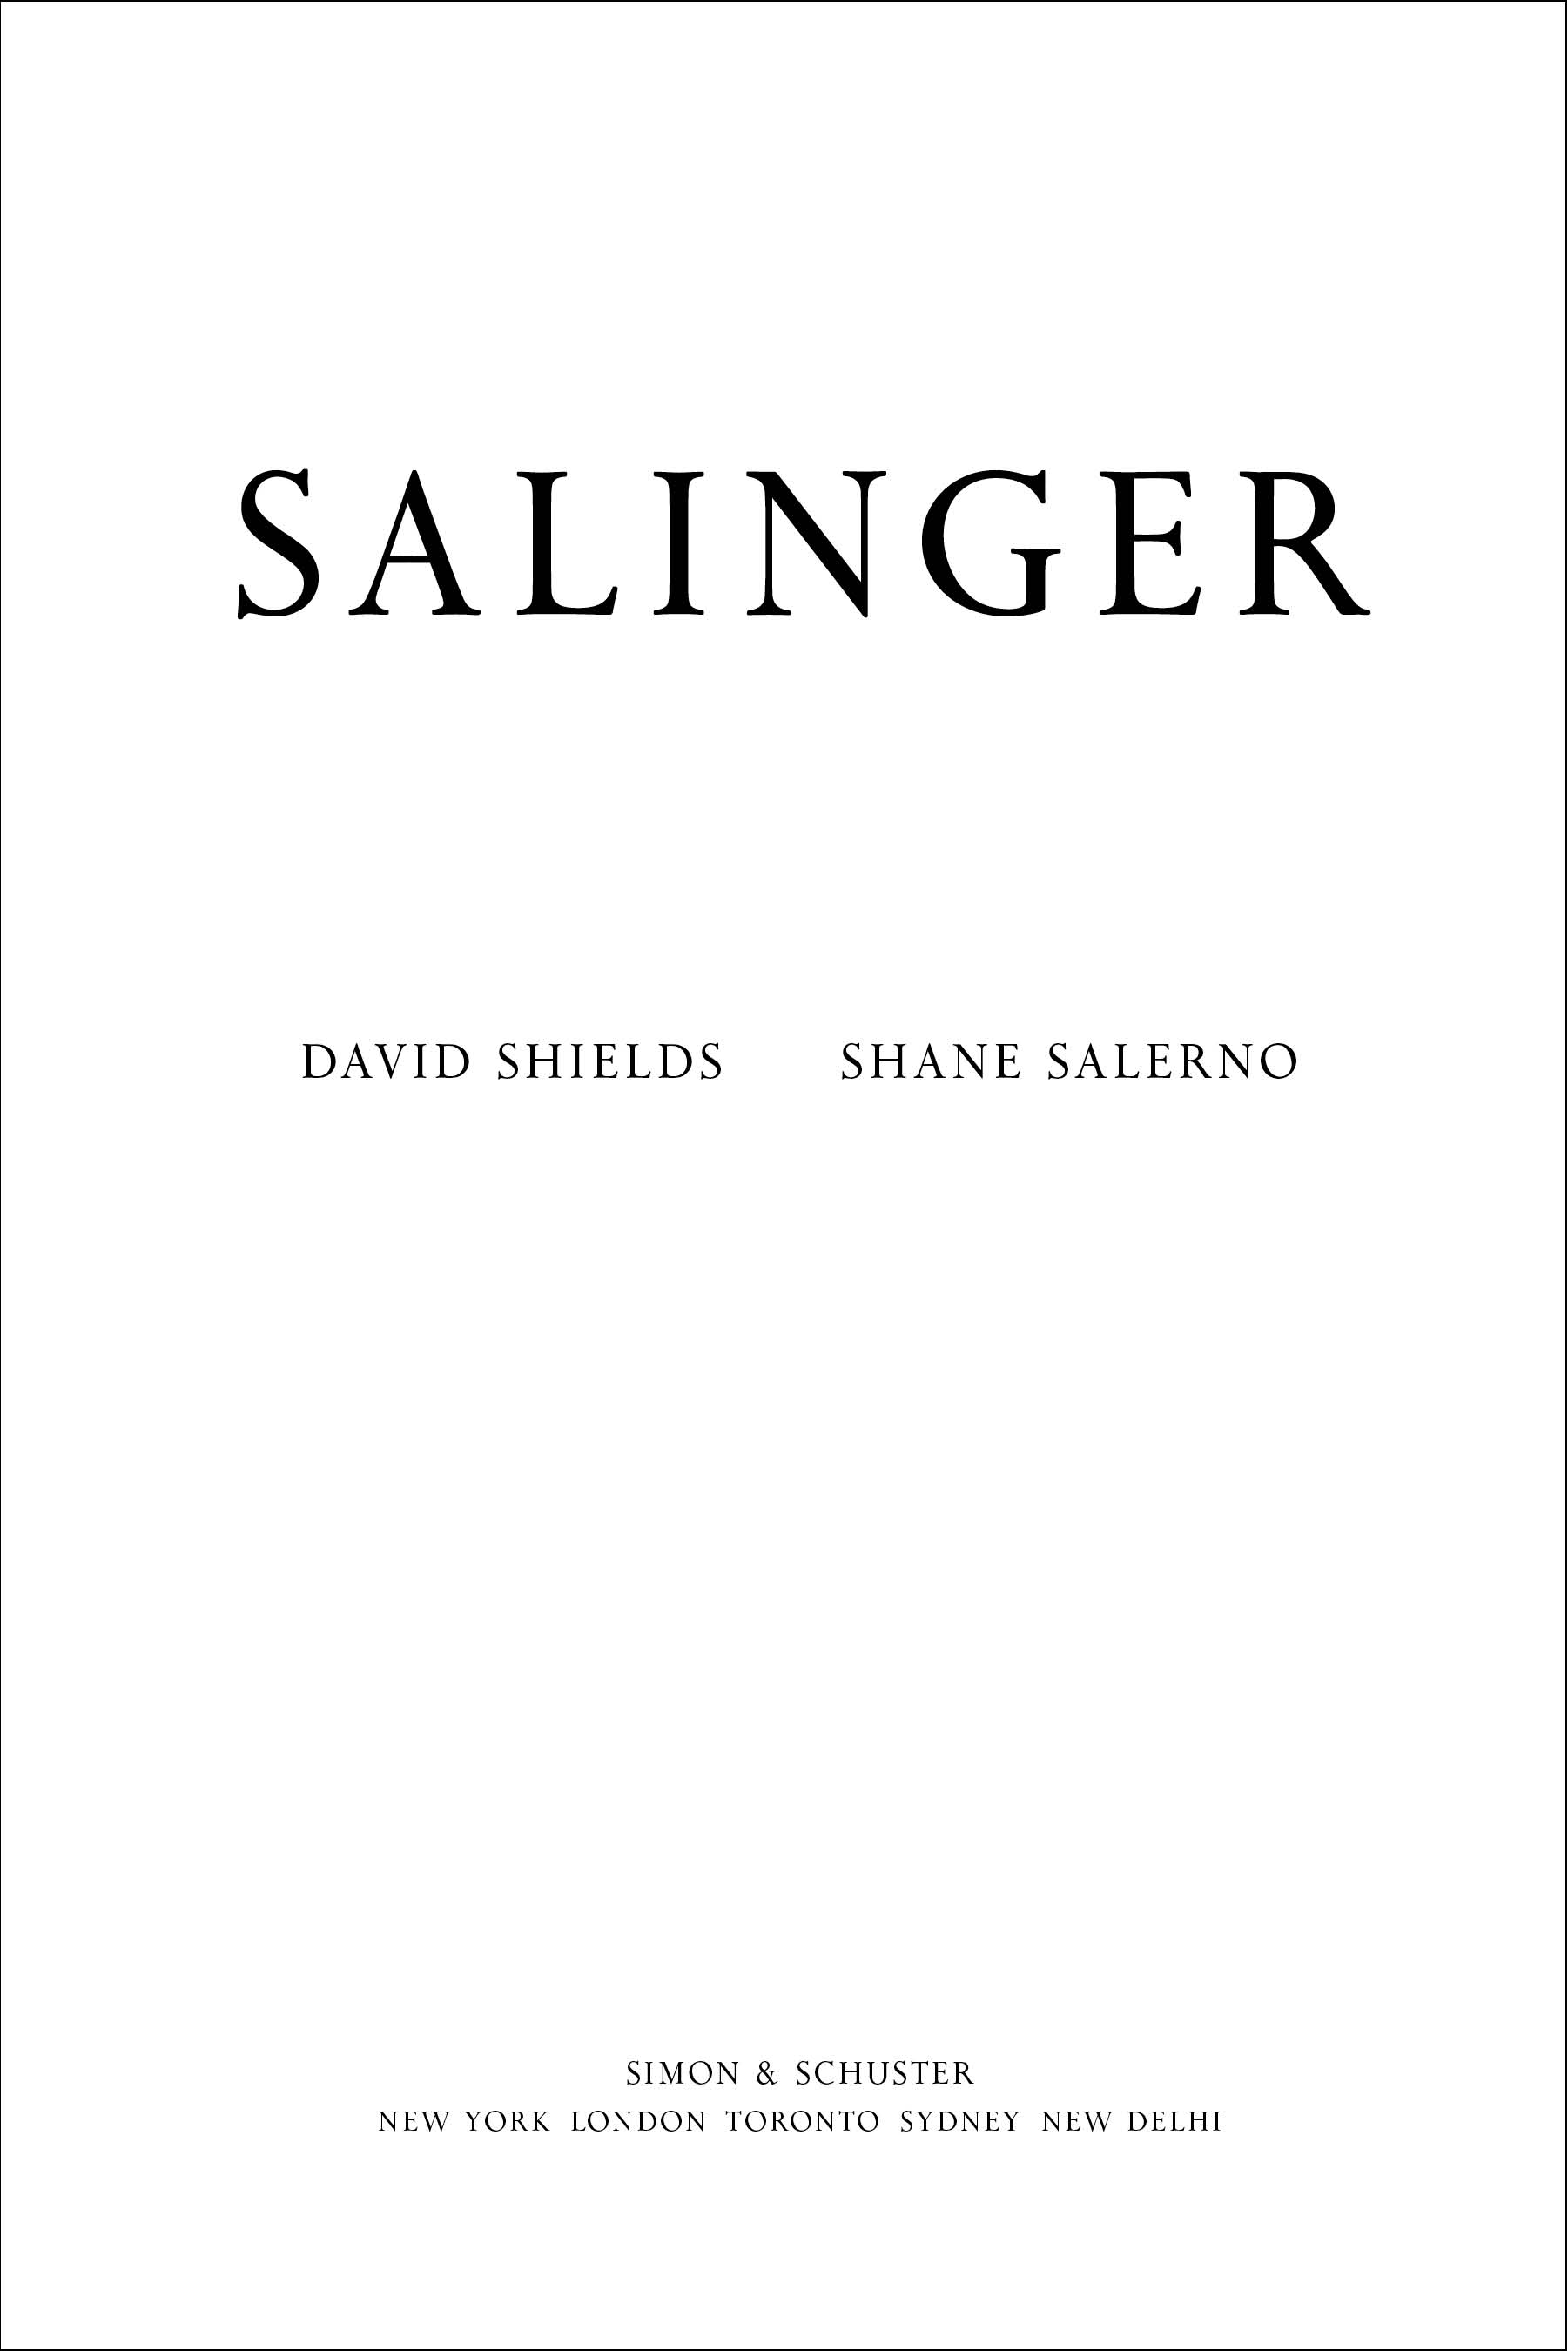 Salinger_title.jpg